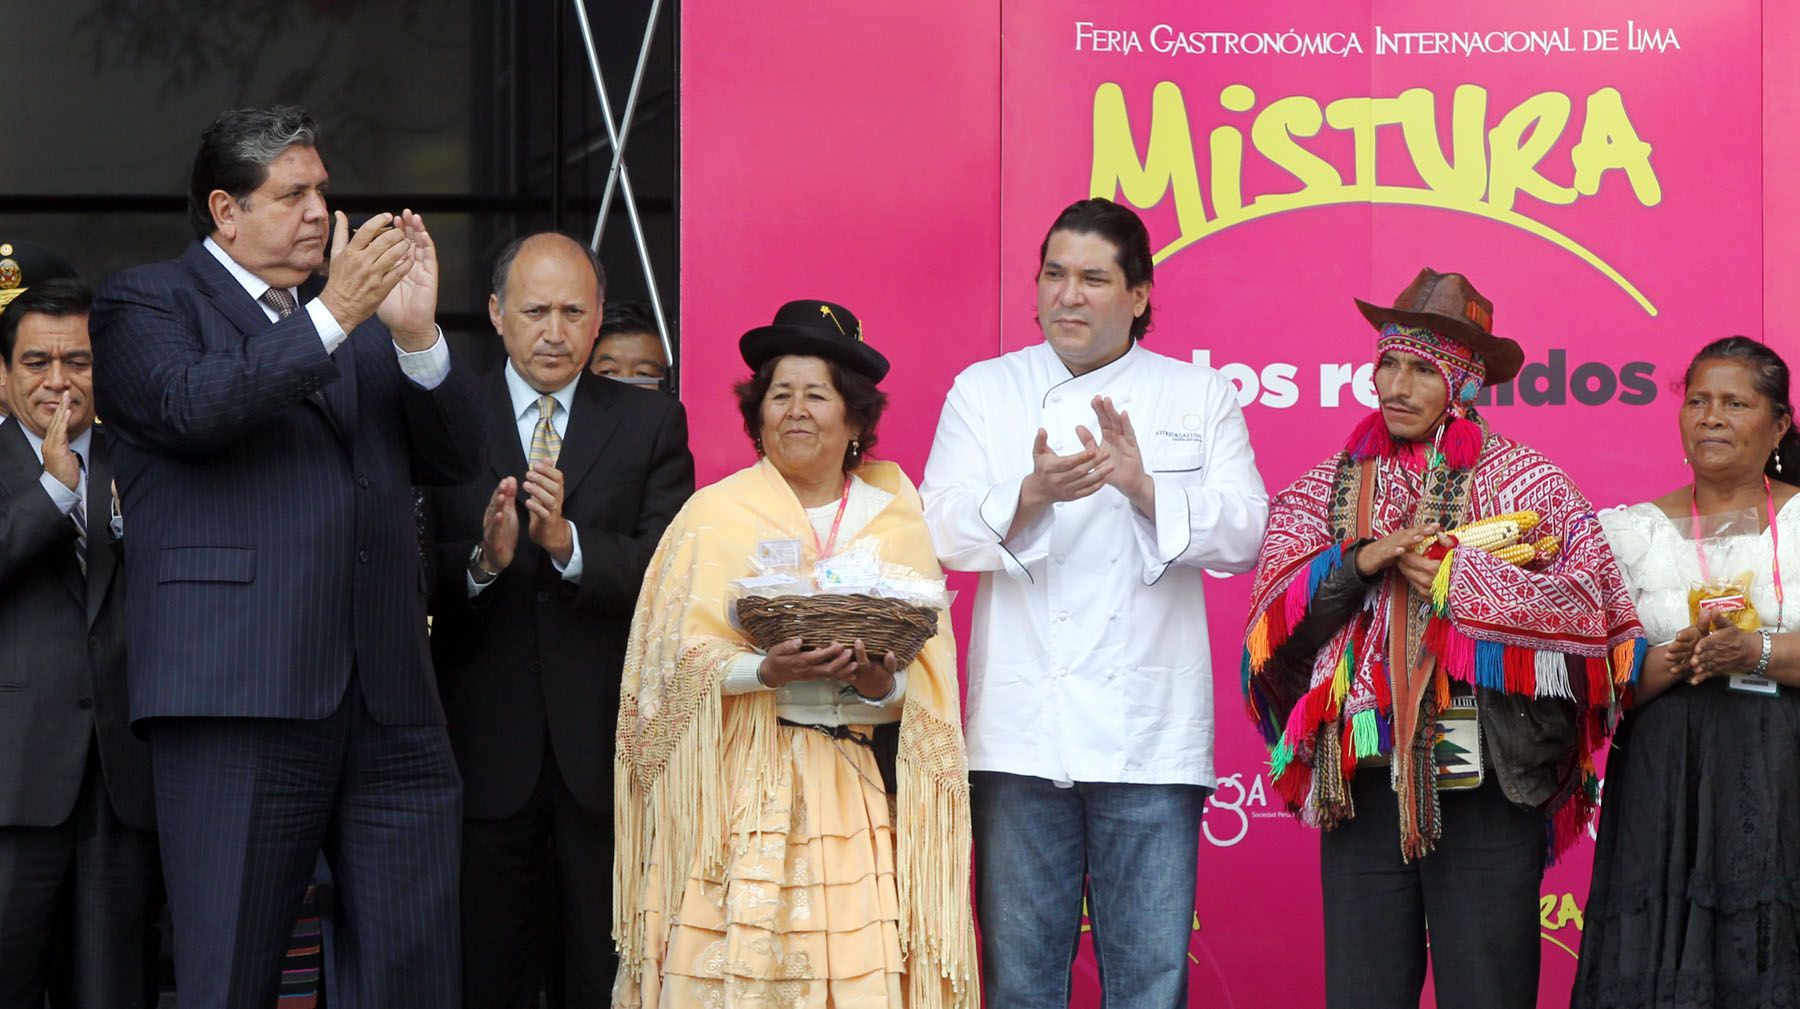 Presidente de la República, Alan García, inaugura junto a directivos de la Asociación Peruana de Gastronomía la III Feria Gastronómica Internacional de Lima Mistura 2010. Foto: ANDINA/Carlos Lezama.